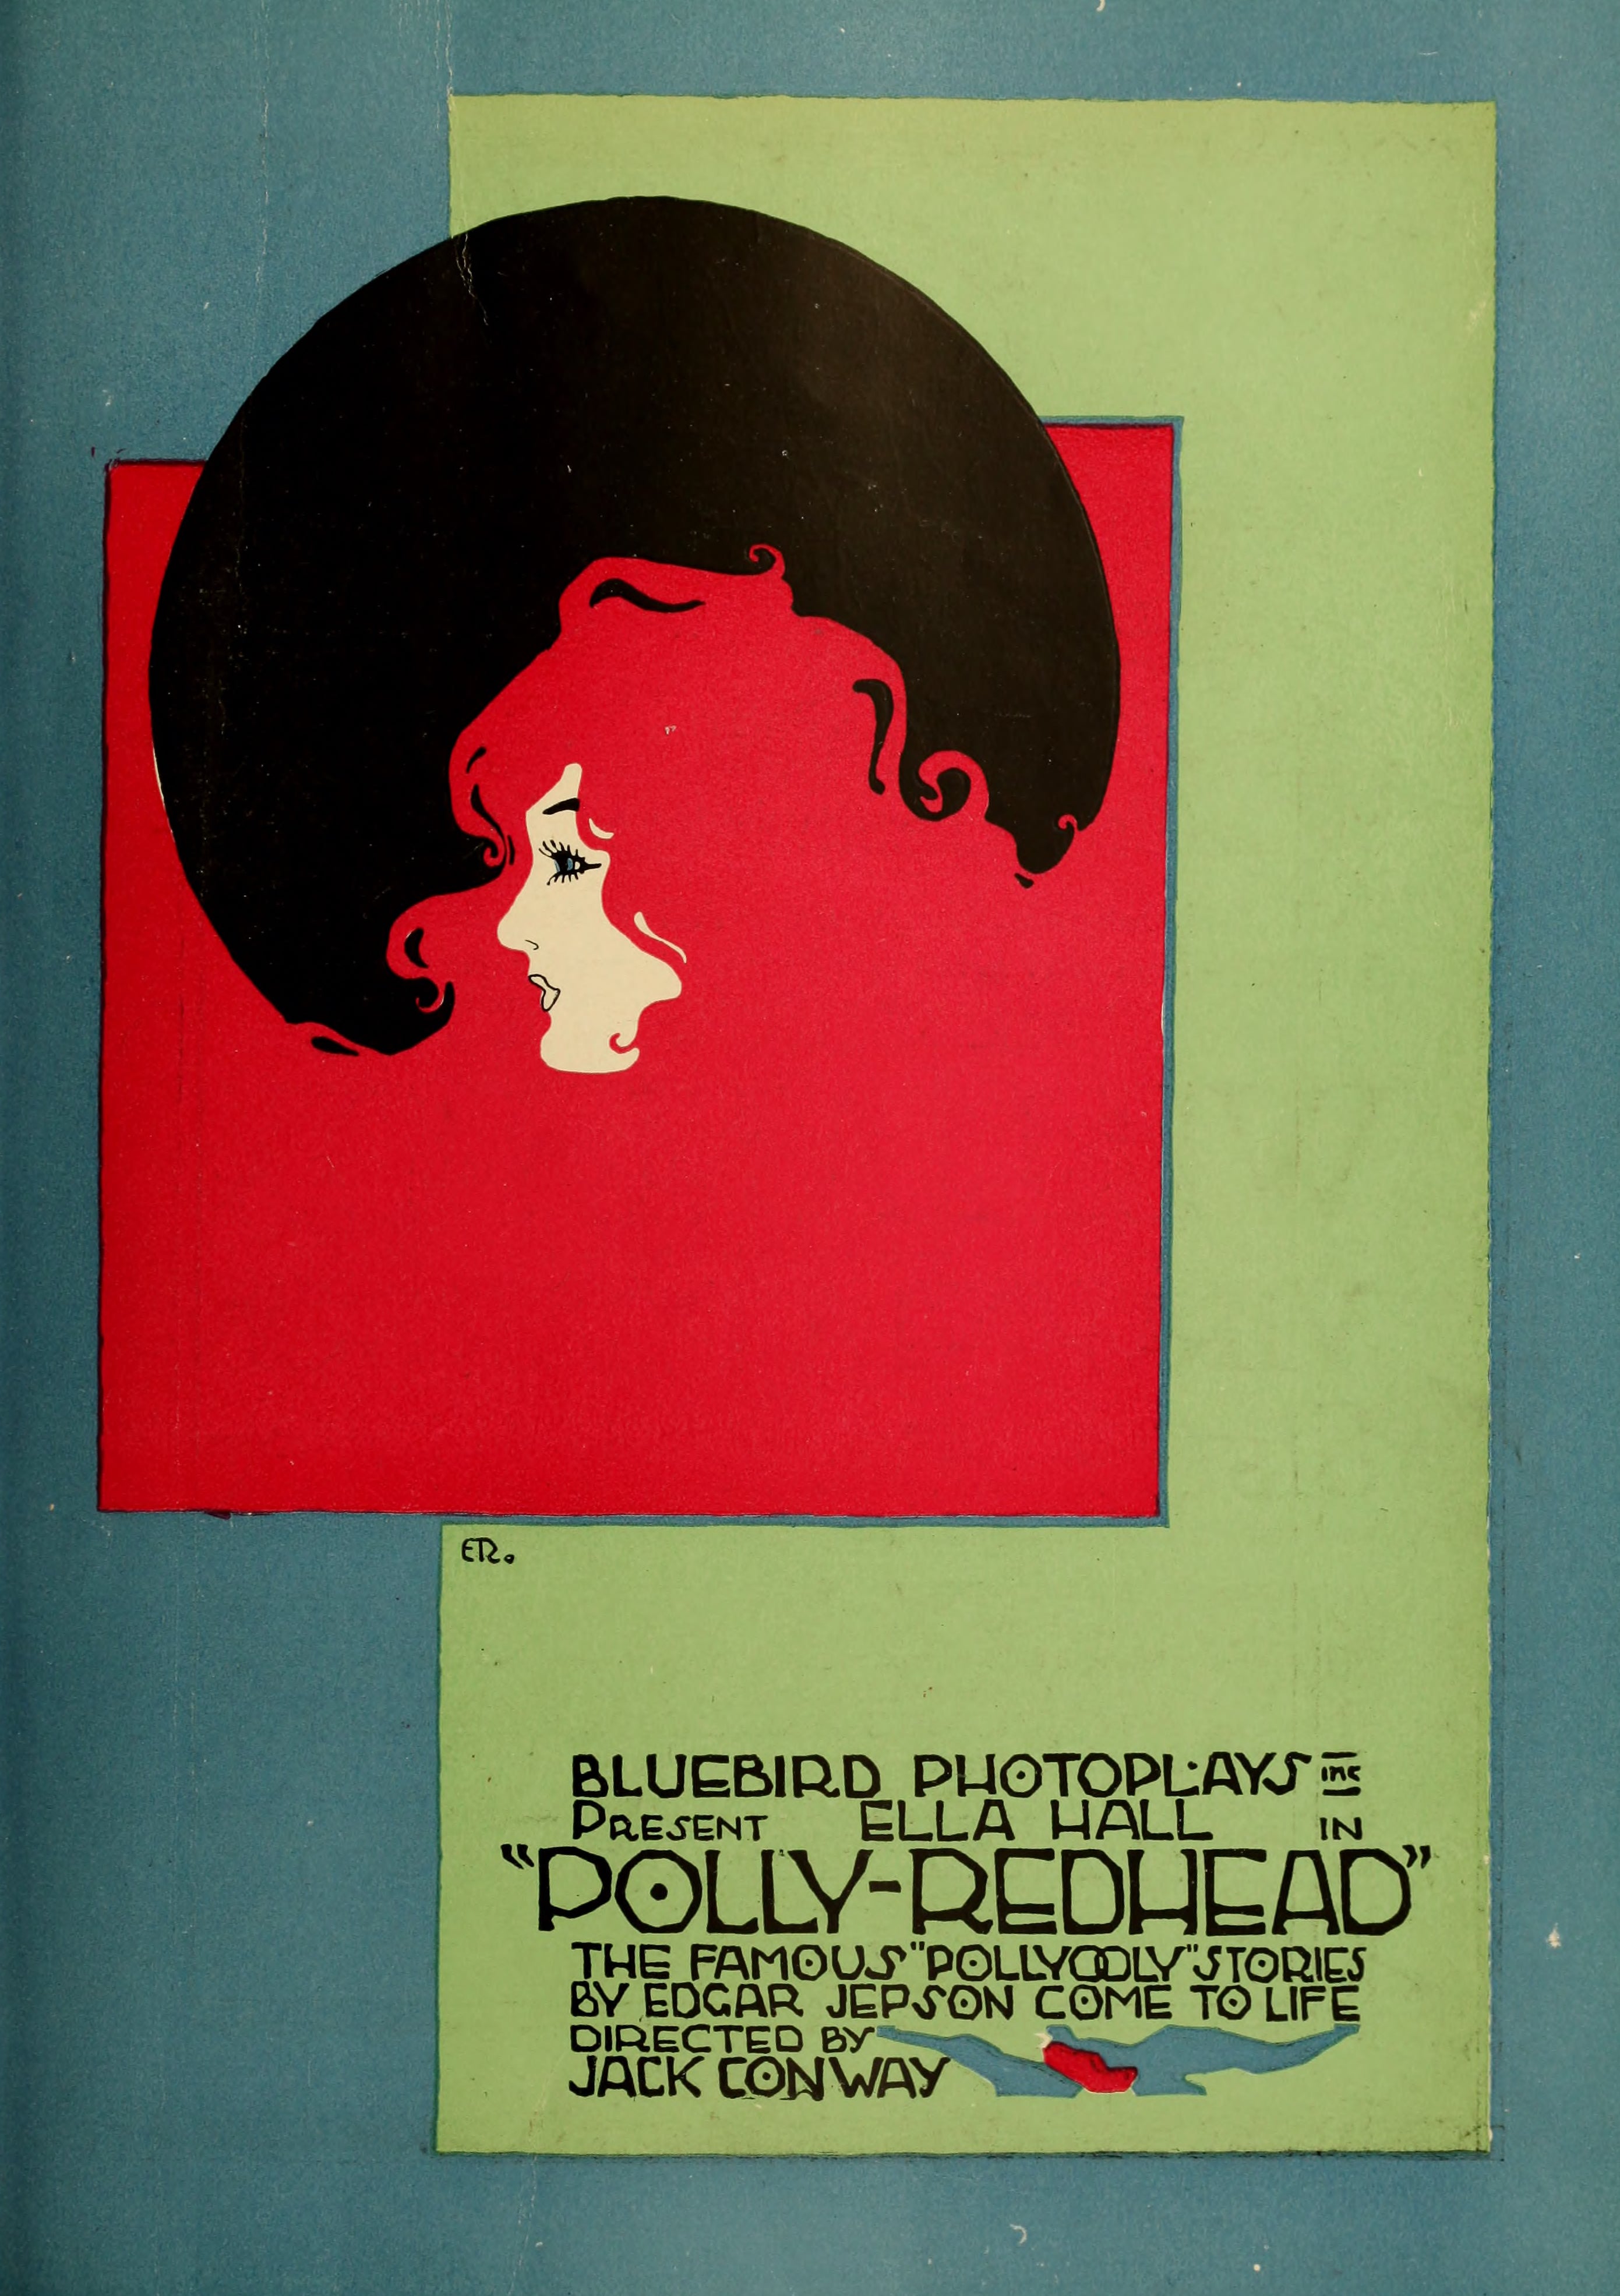 Polly Redhead (1917) | www.vintoz.com